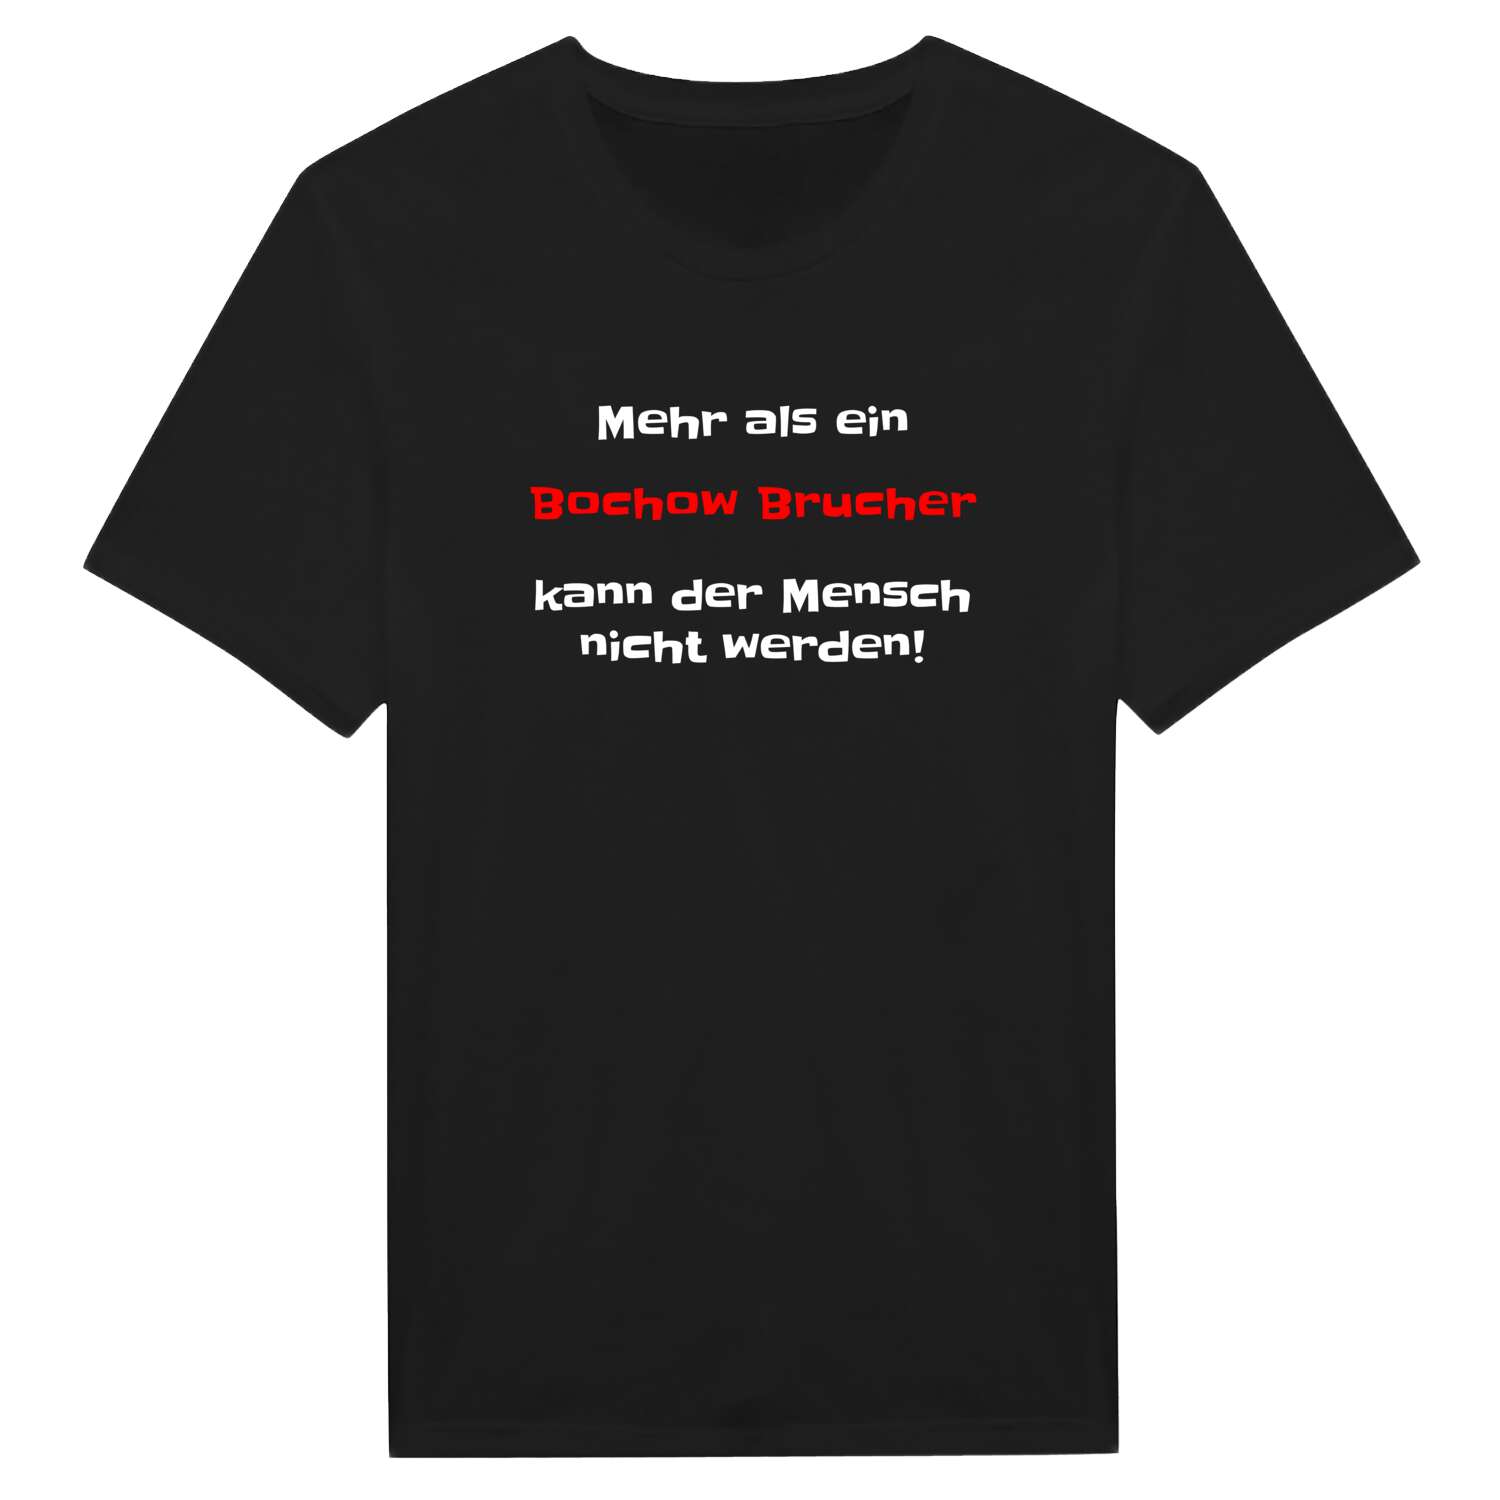 Bochow Bruch T-Shirt »Mehr als ein«